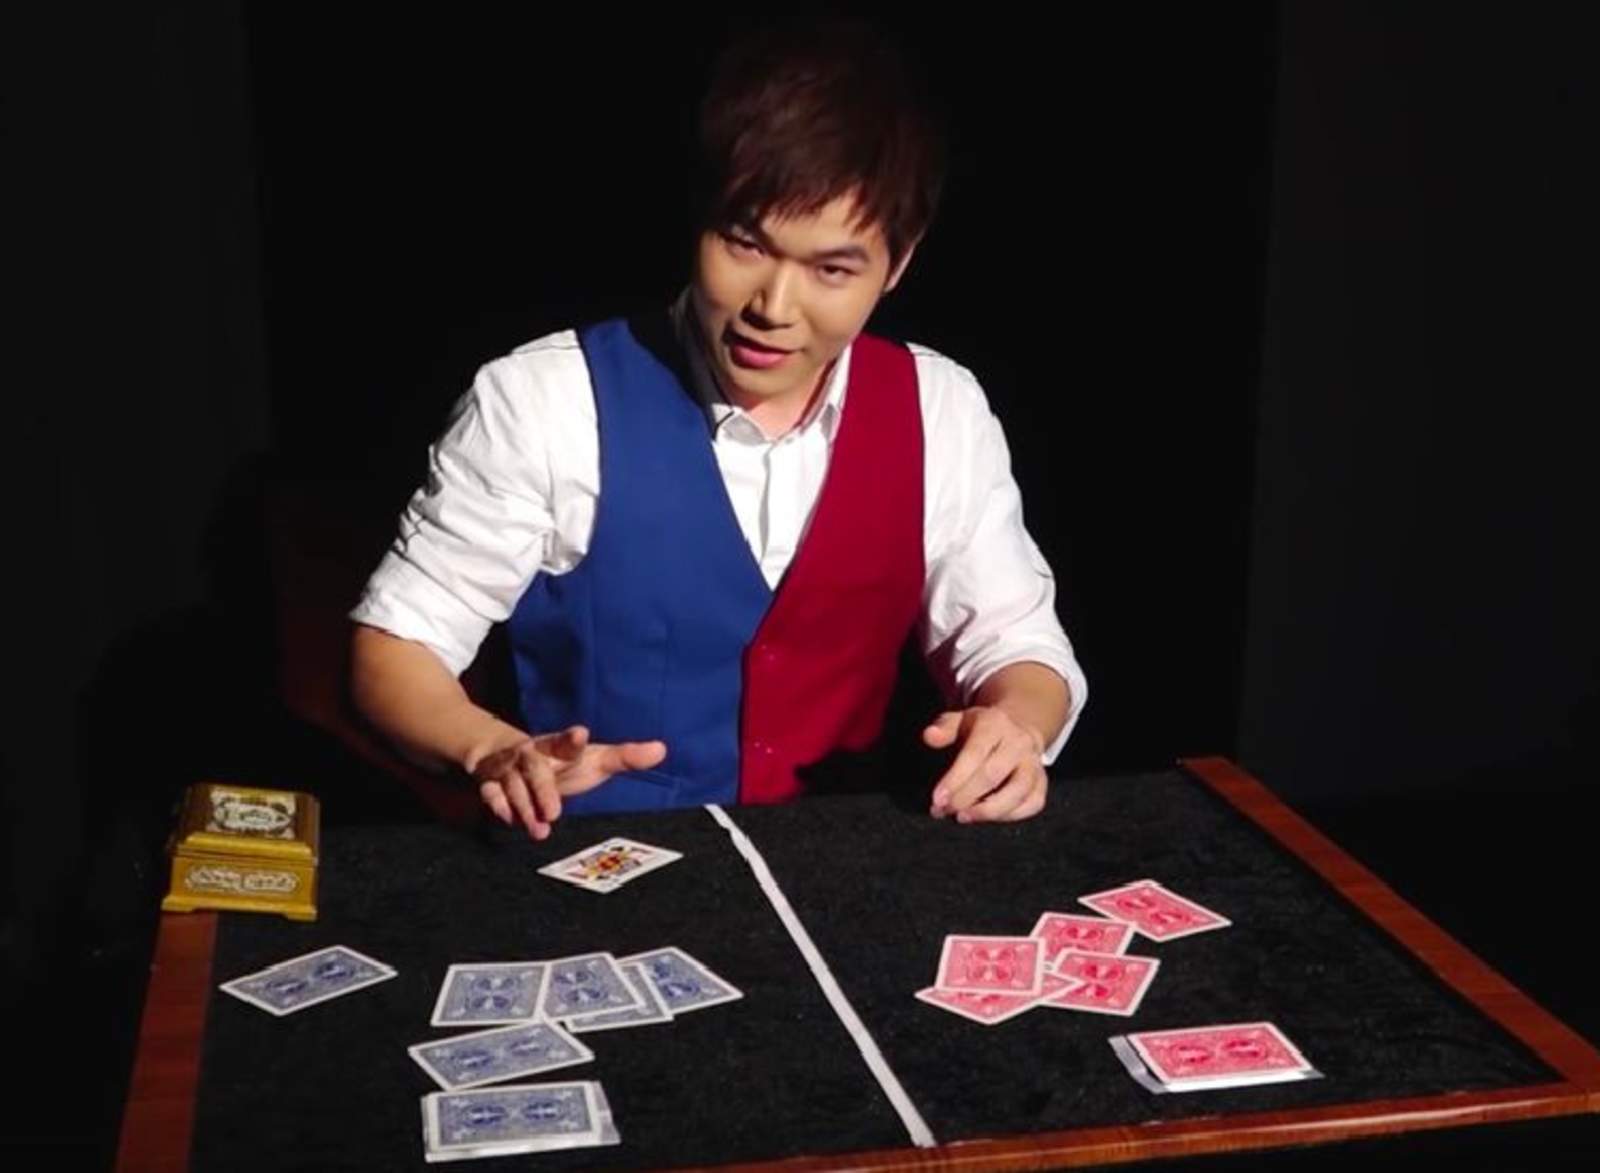 El mago ganó un reconocimiento por su truco, que mantiene a los internautas sorprendidos. (INTERNET)